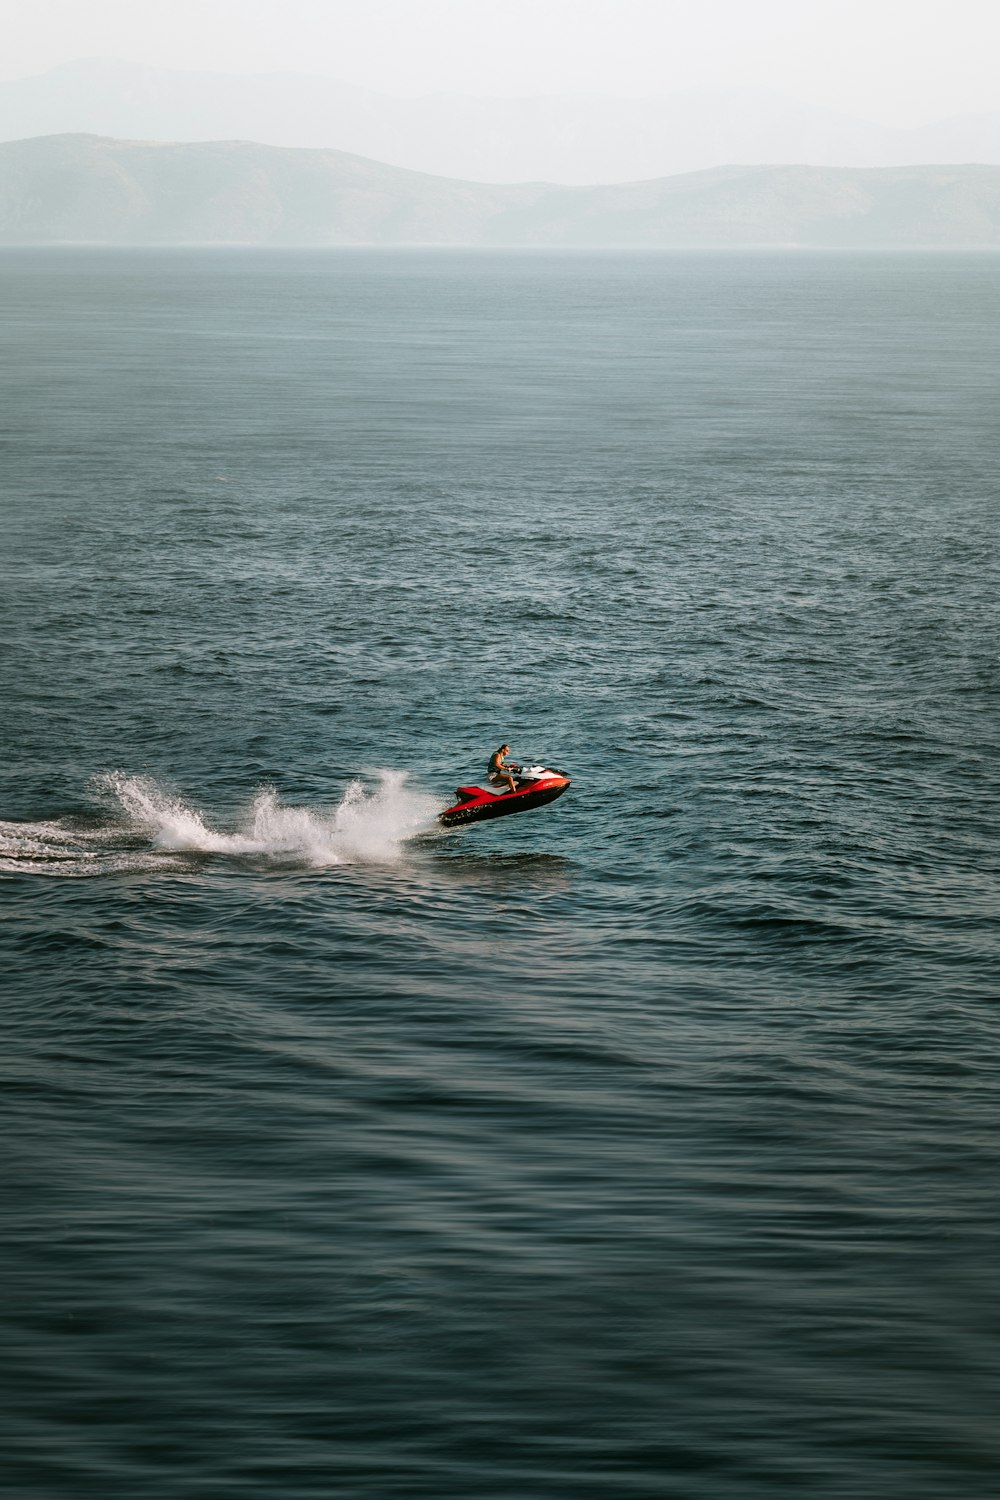 Una persona en una moto acuática en medio del océano